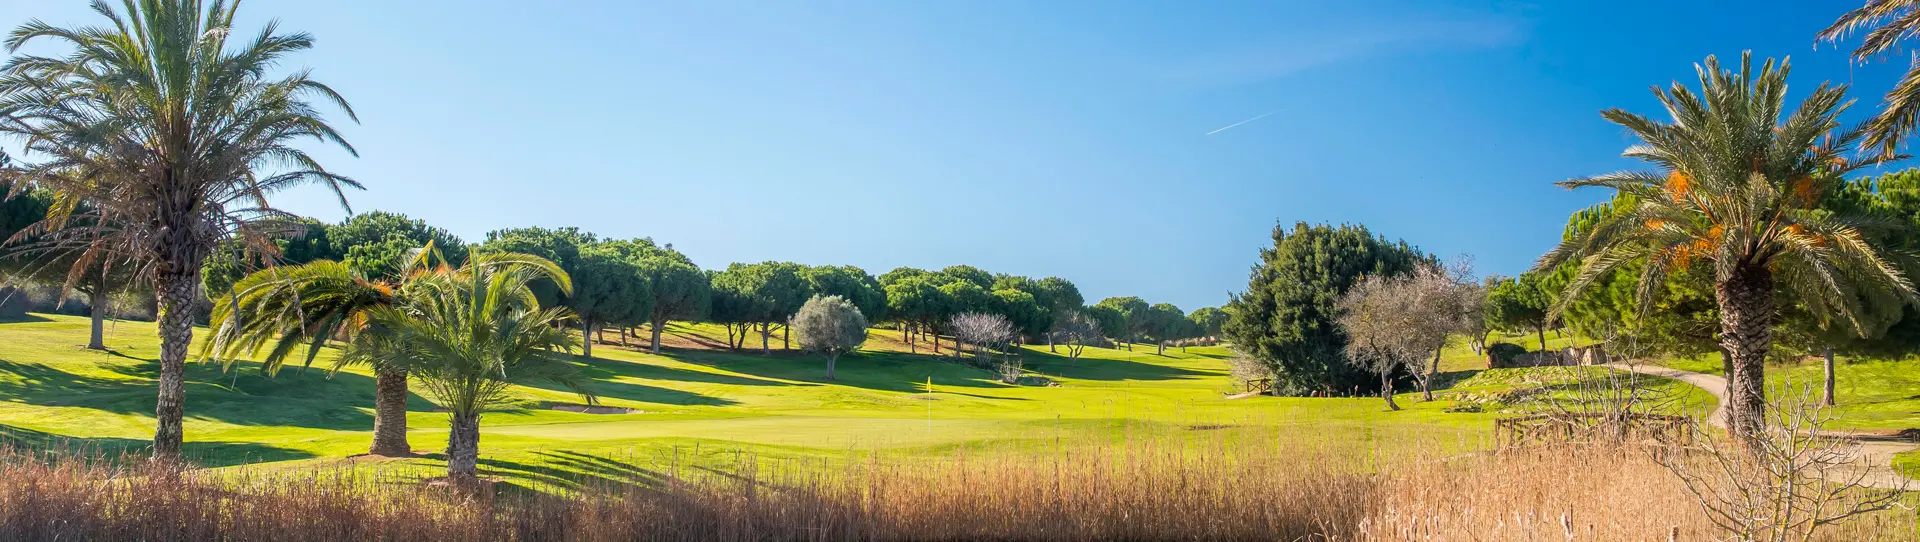 Portugal golf courses - Boavista Golf Course - Photo 1